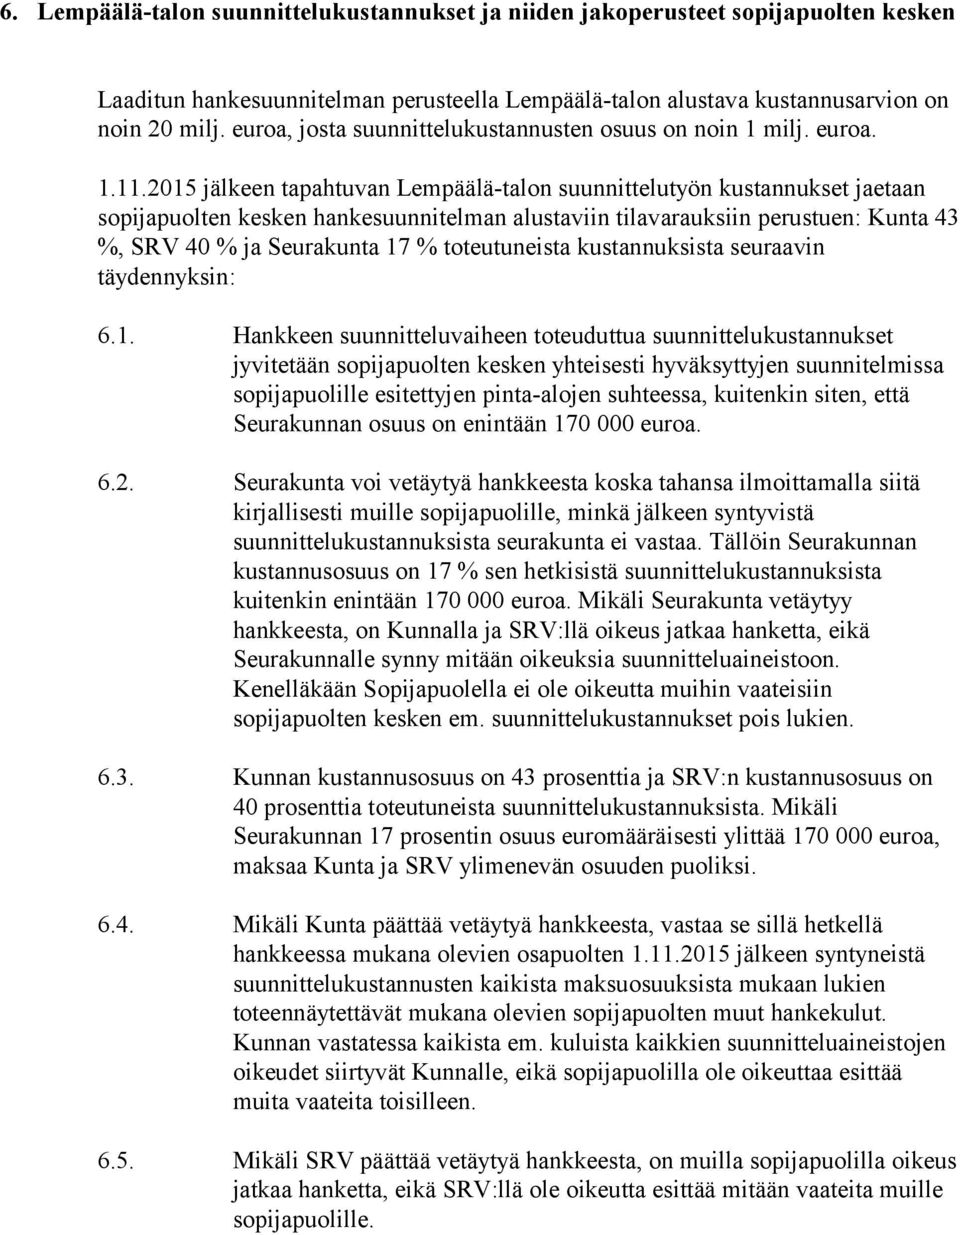 2015 jälkeen tapahtuvan Lempäälä-talon suunnittelutyön kustannukset jaetaan sopijapuolten kesken hankesuunnitelman alustaviin tilavarauksiin perustuen: Kunta 43 %, SRV 40 % ja Seurakunta 17 %